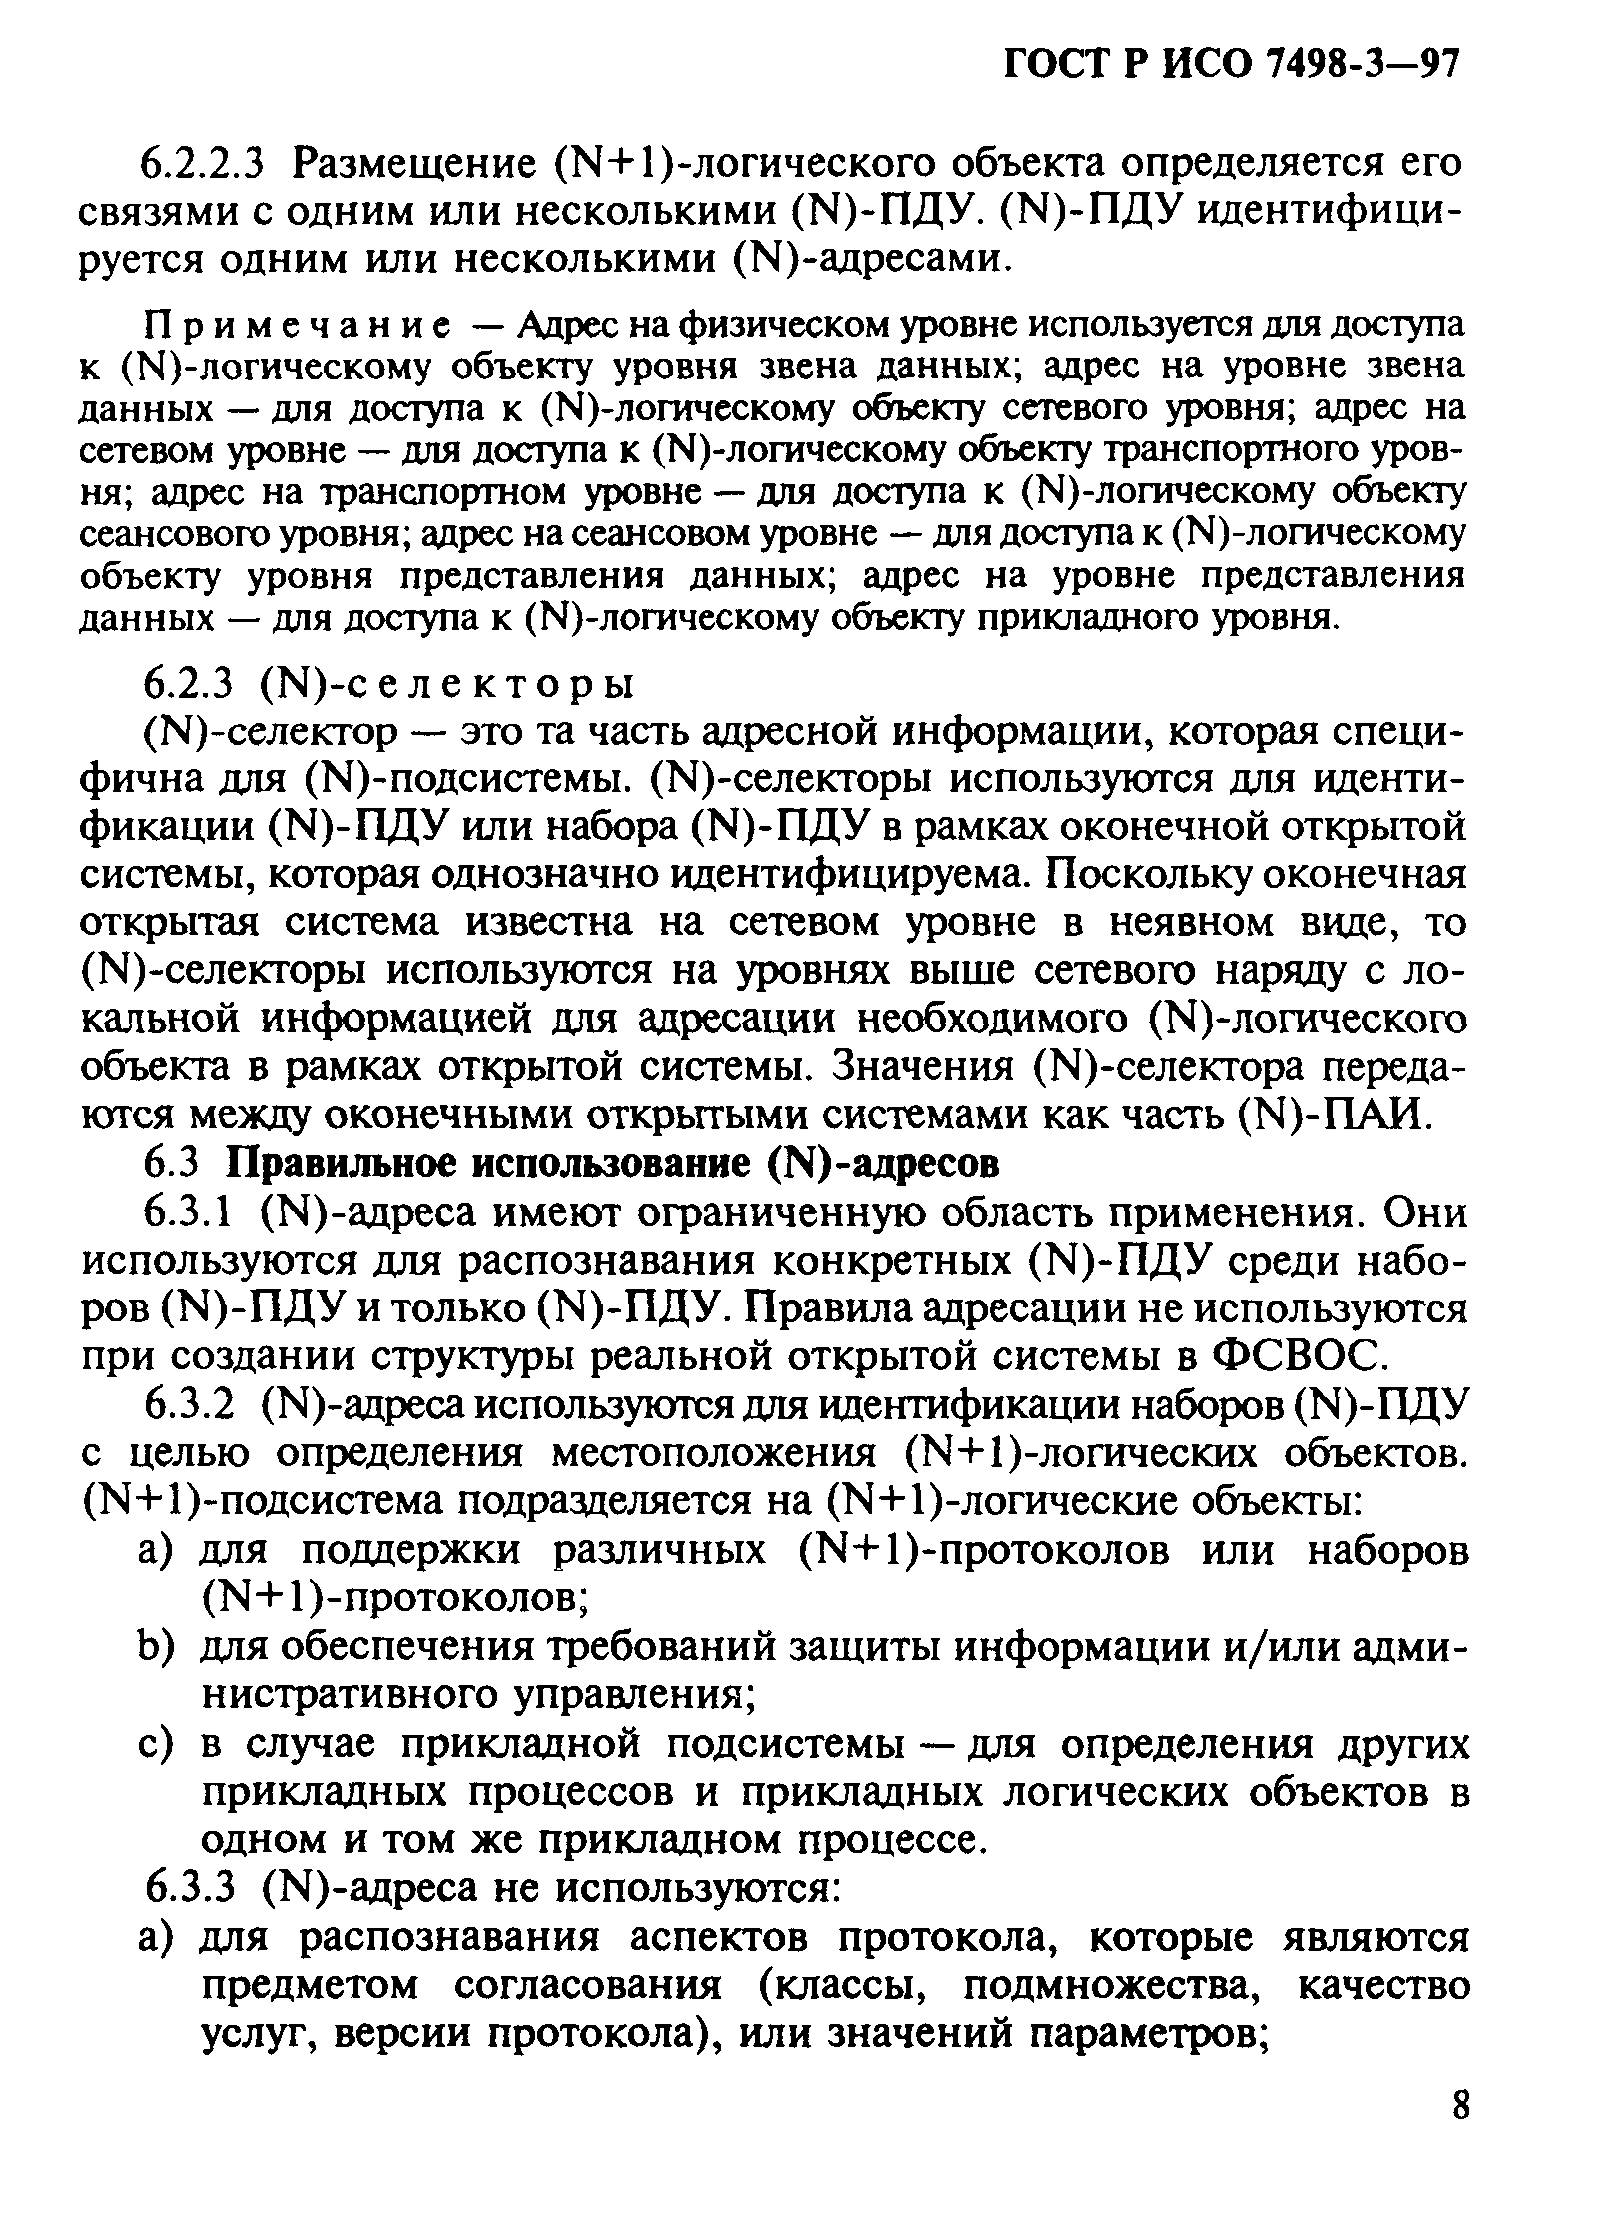 ГОСТ Р ИСО 7498-3-97